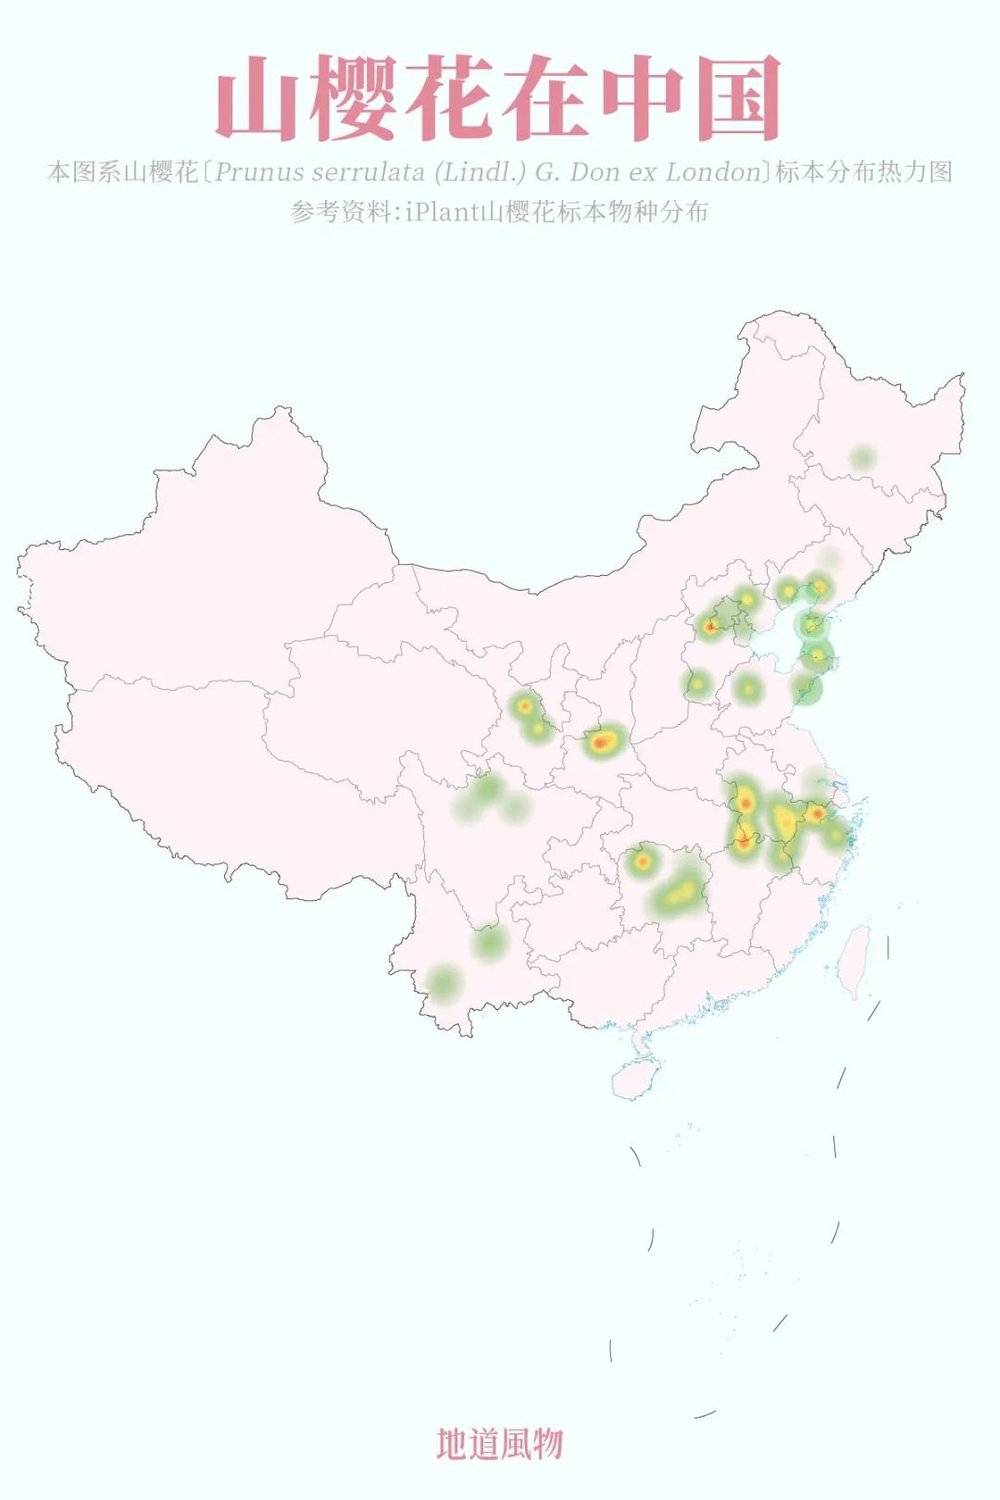 中国地图可爱手绘图片